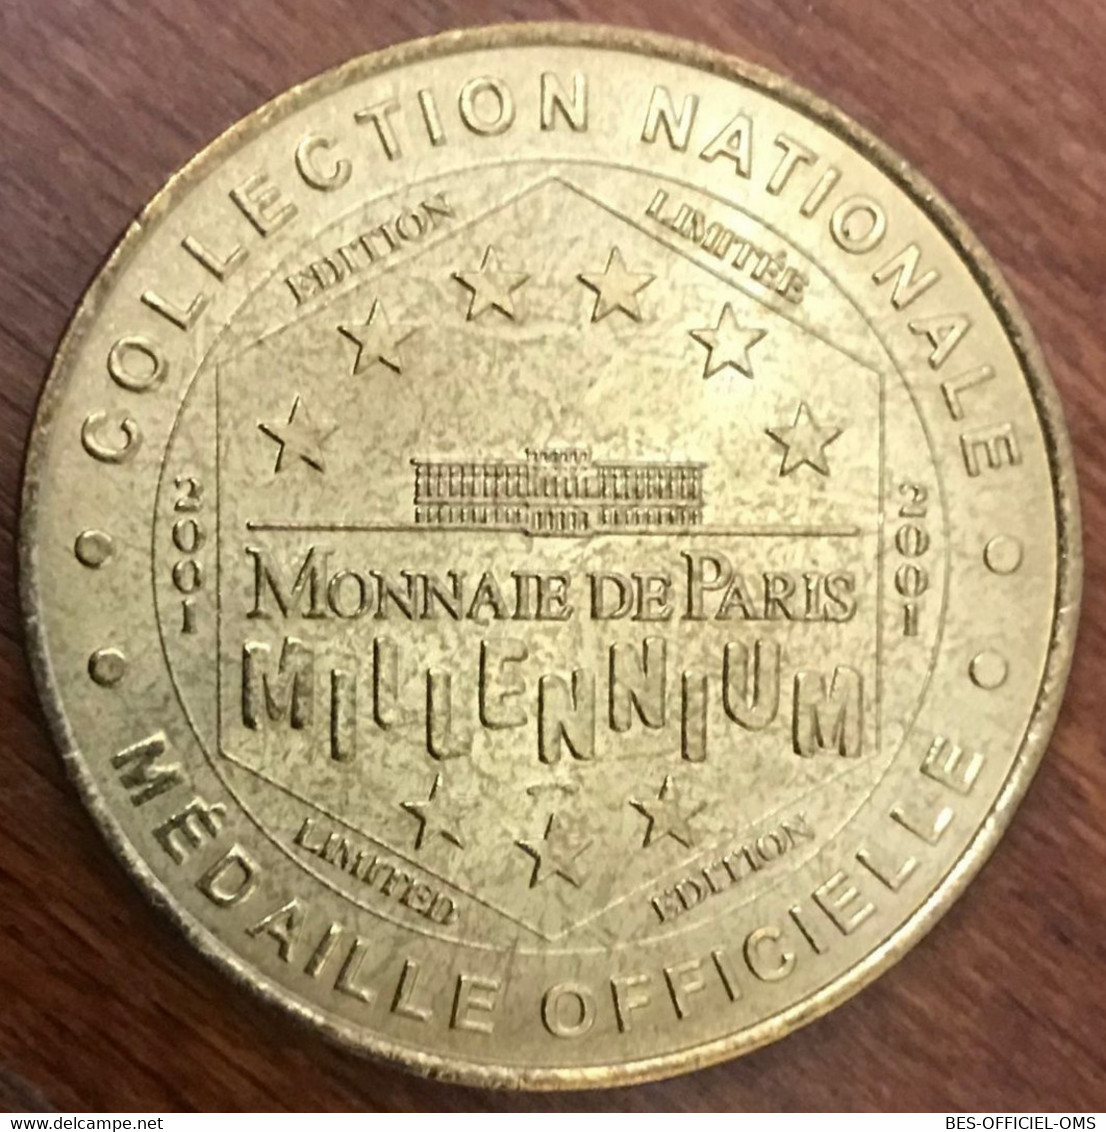 14 CAEN LE MÉMORIAL MDP 2001 MÉDAILLE SOUVENIR MONNAIE DE PARIS JETON TOURISTIQUE MEDALS COINS TOKENS - 2001